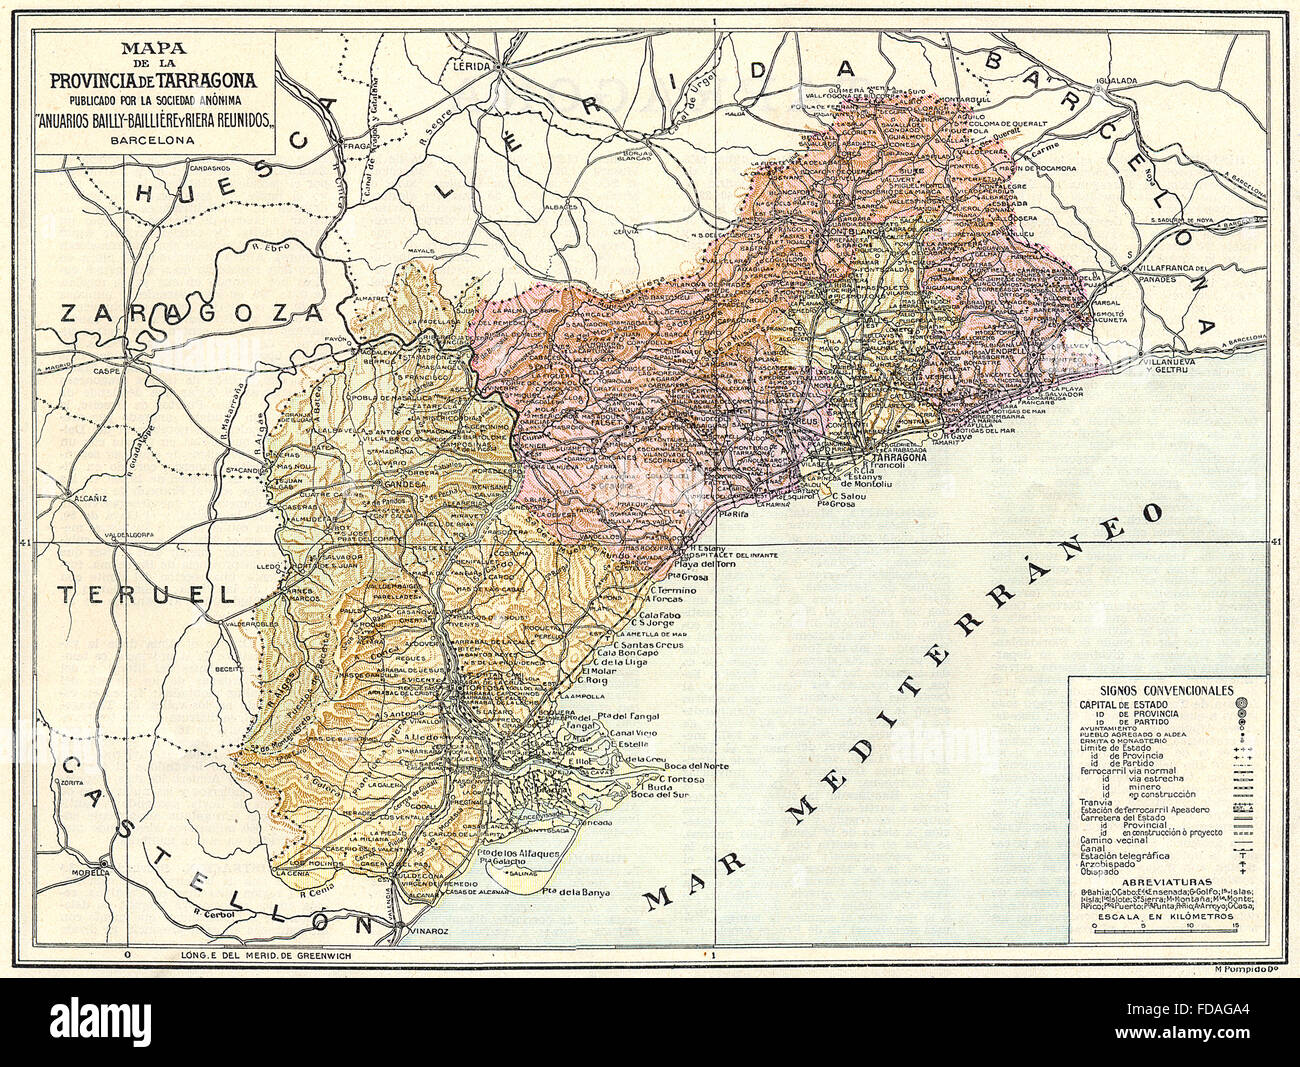 SPAIN: Mapa de la Provincia de Tarragona, 1913 Stock Photo